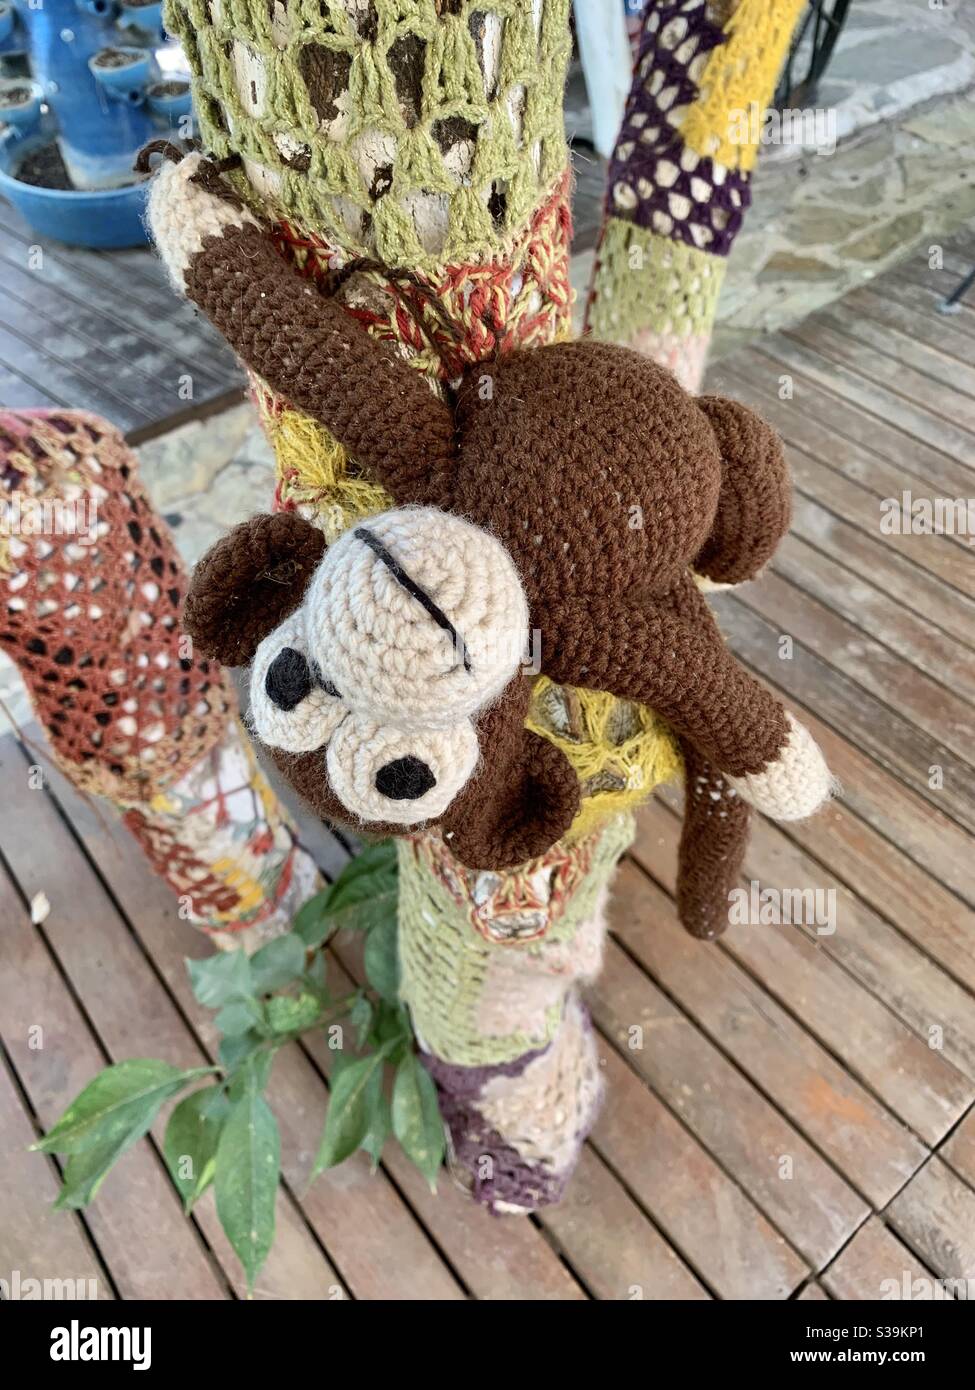 Crochet monkey having fun in a crochet tree Stock Photo